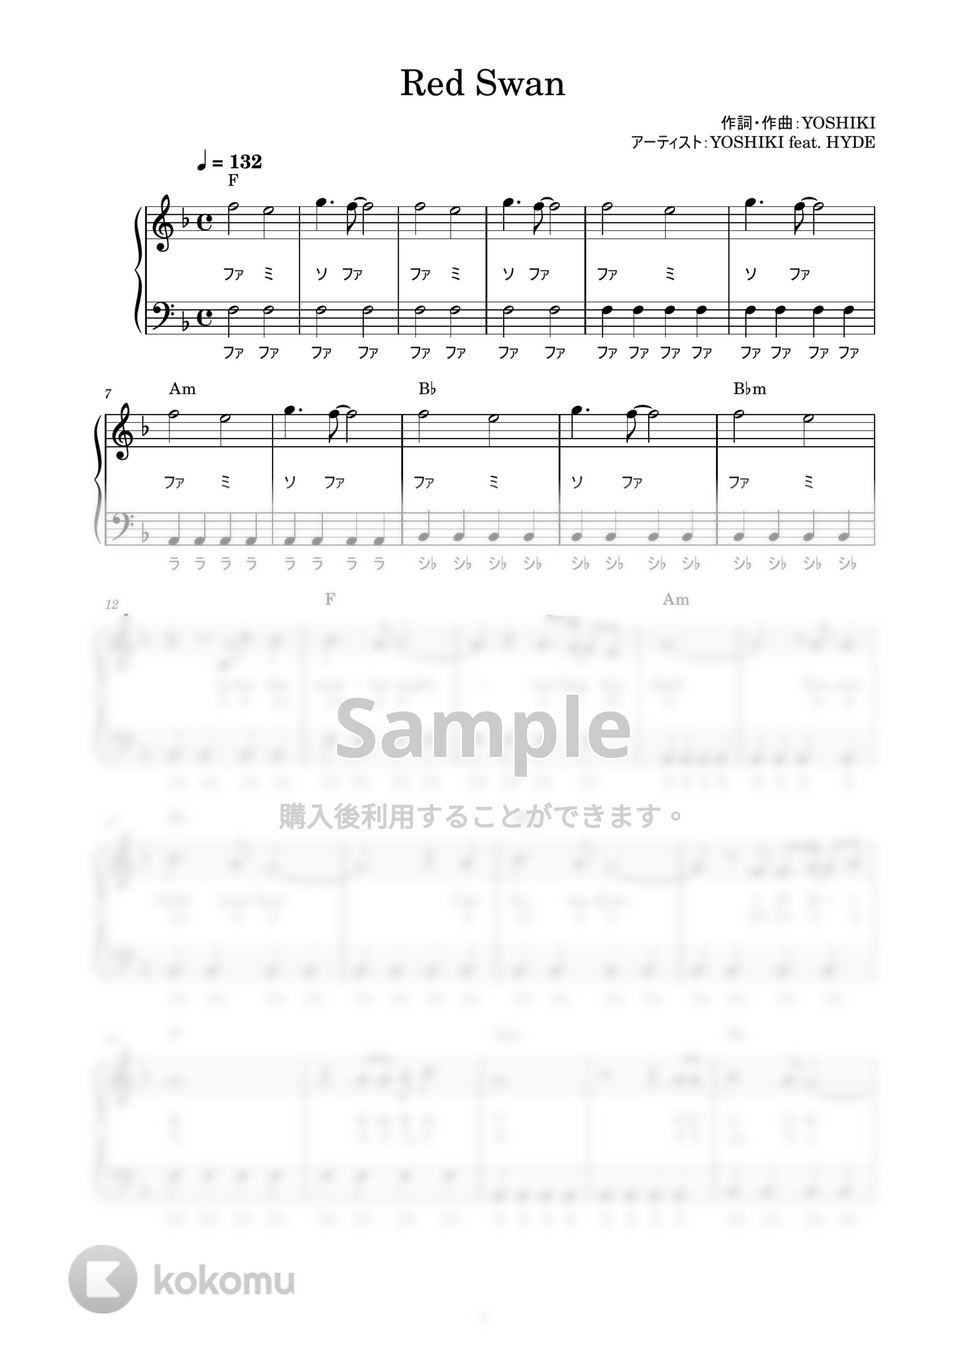 進撃の巨人SEASON 3 - Red Swan (かんたん / 歌詞付き / ドレミ付き / 初心者) by piano.tokyo